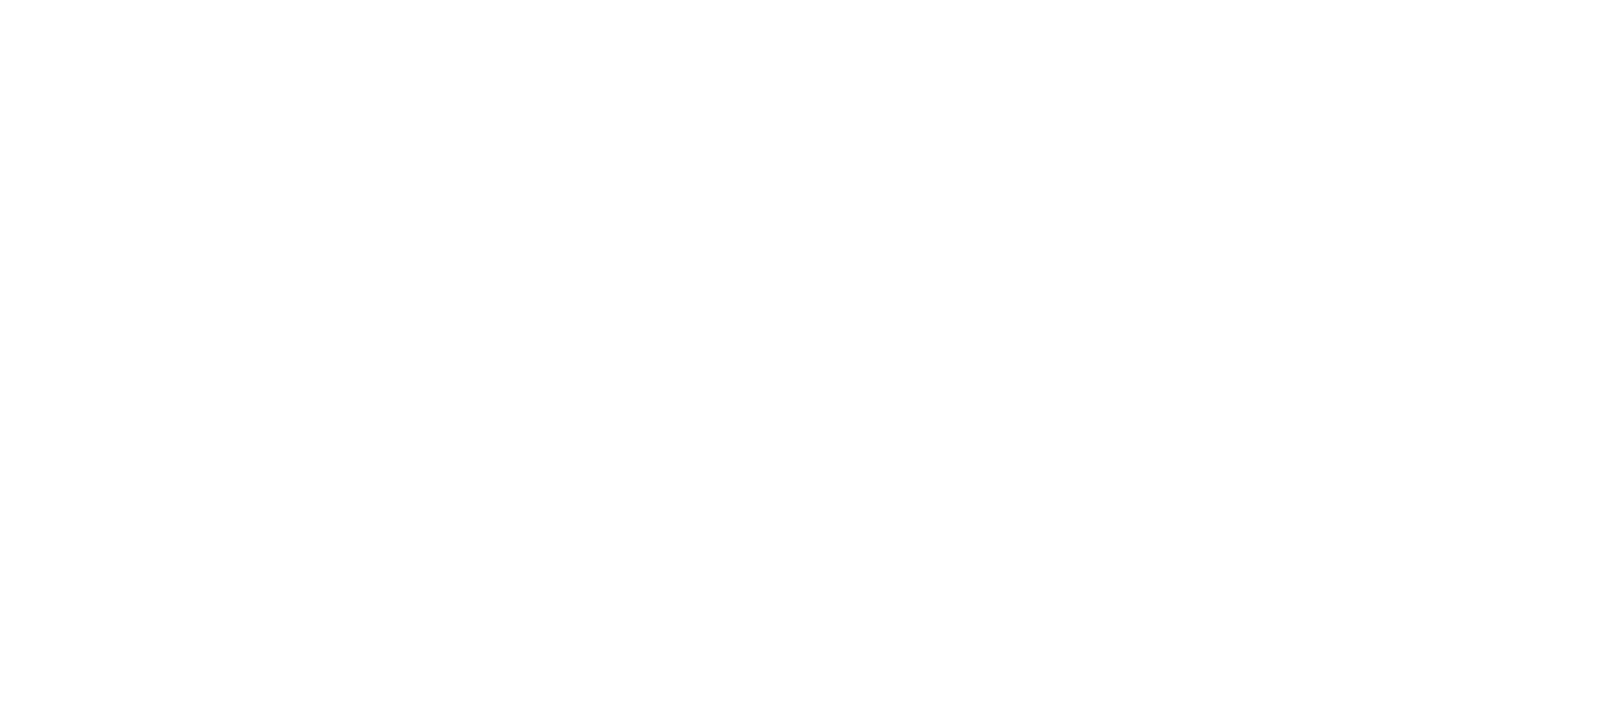 logo ciss bloemen wonen